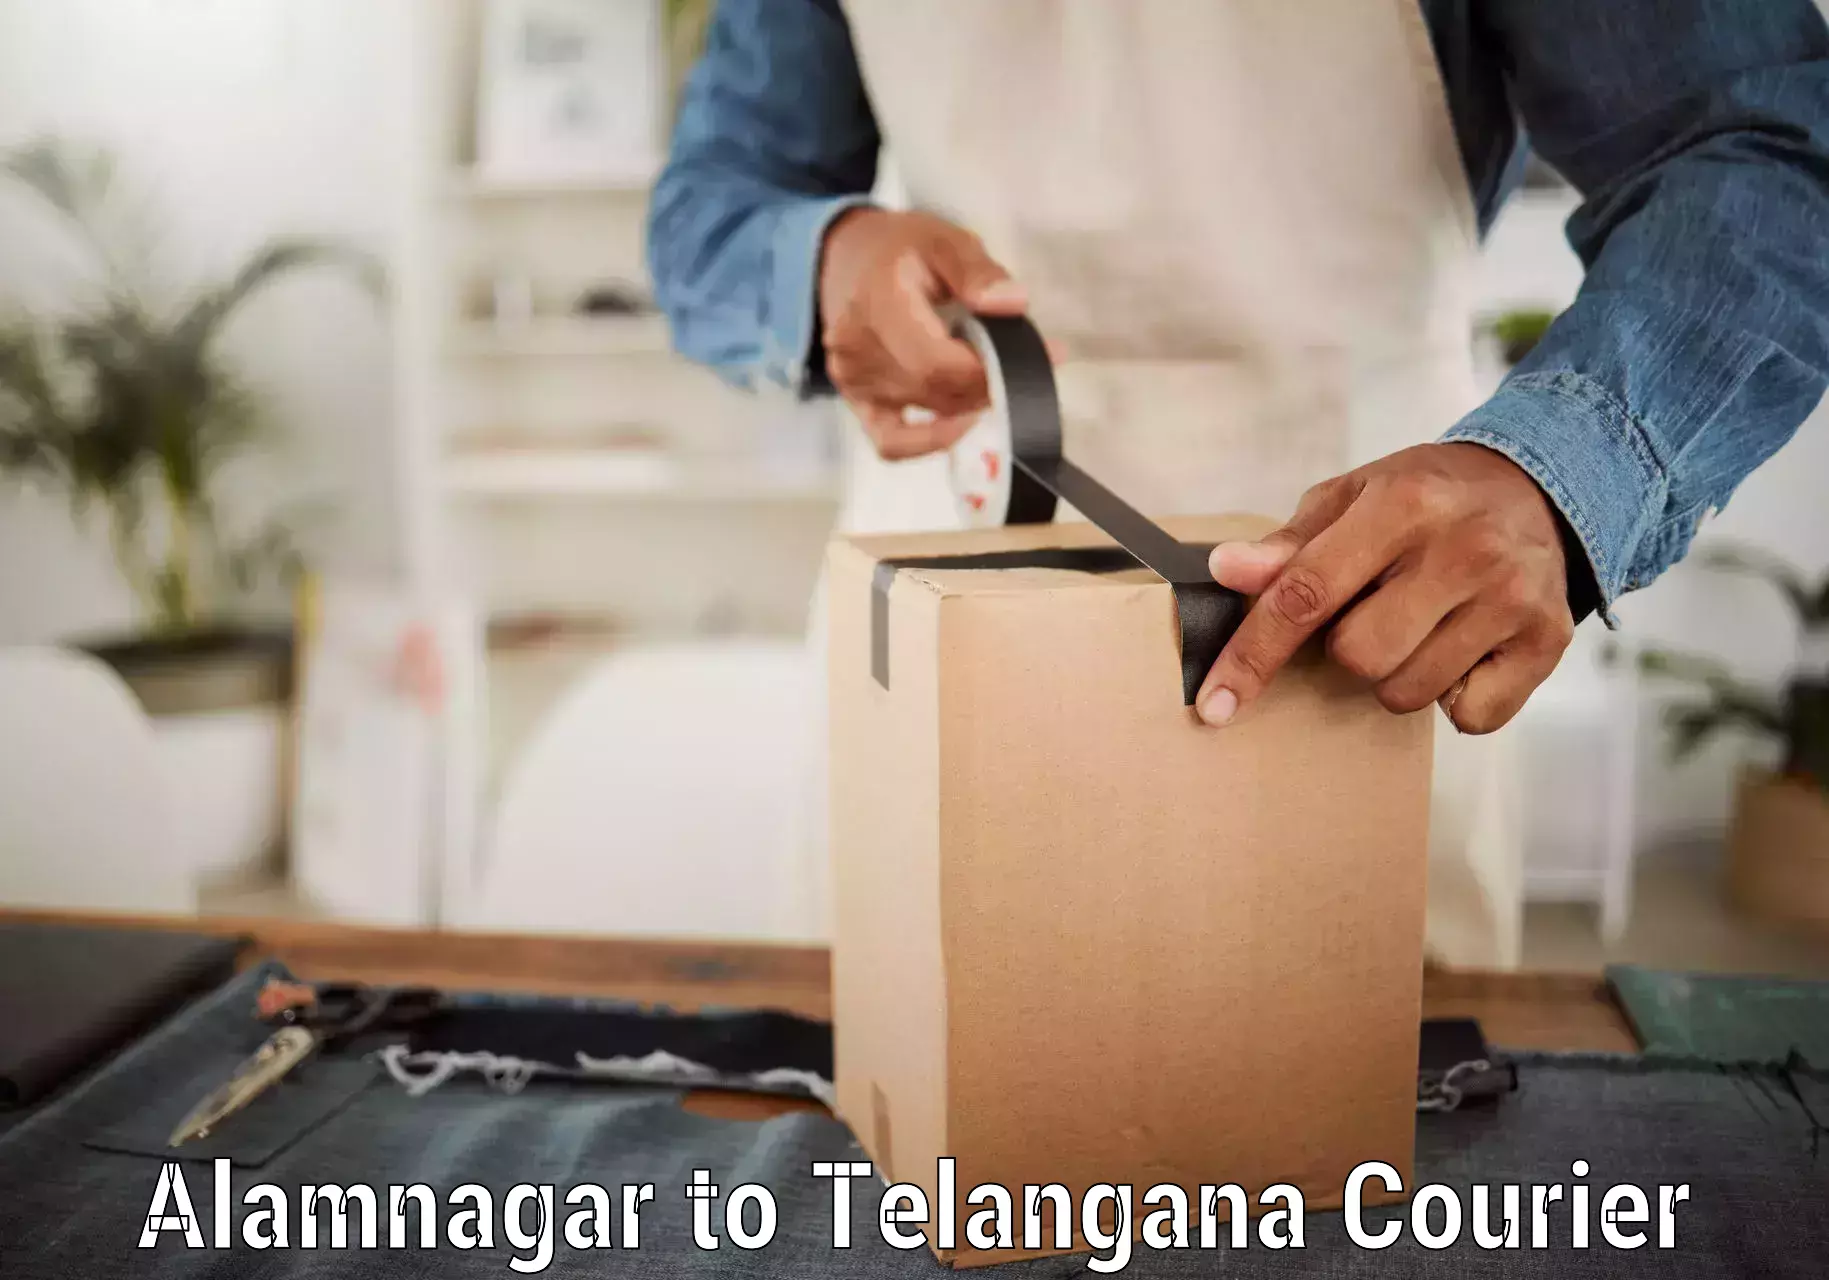 Courier app Alamnagar to Narsampet